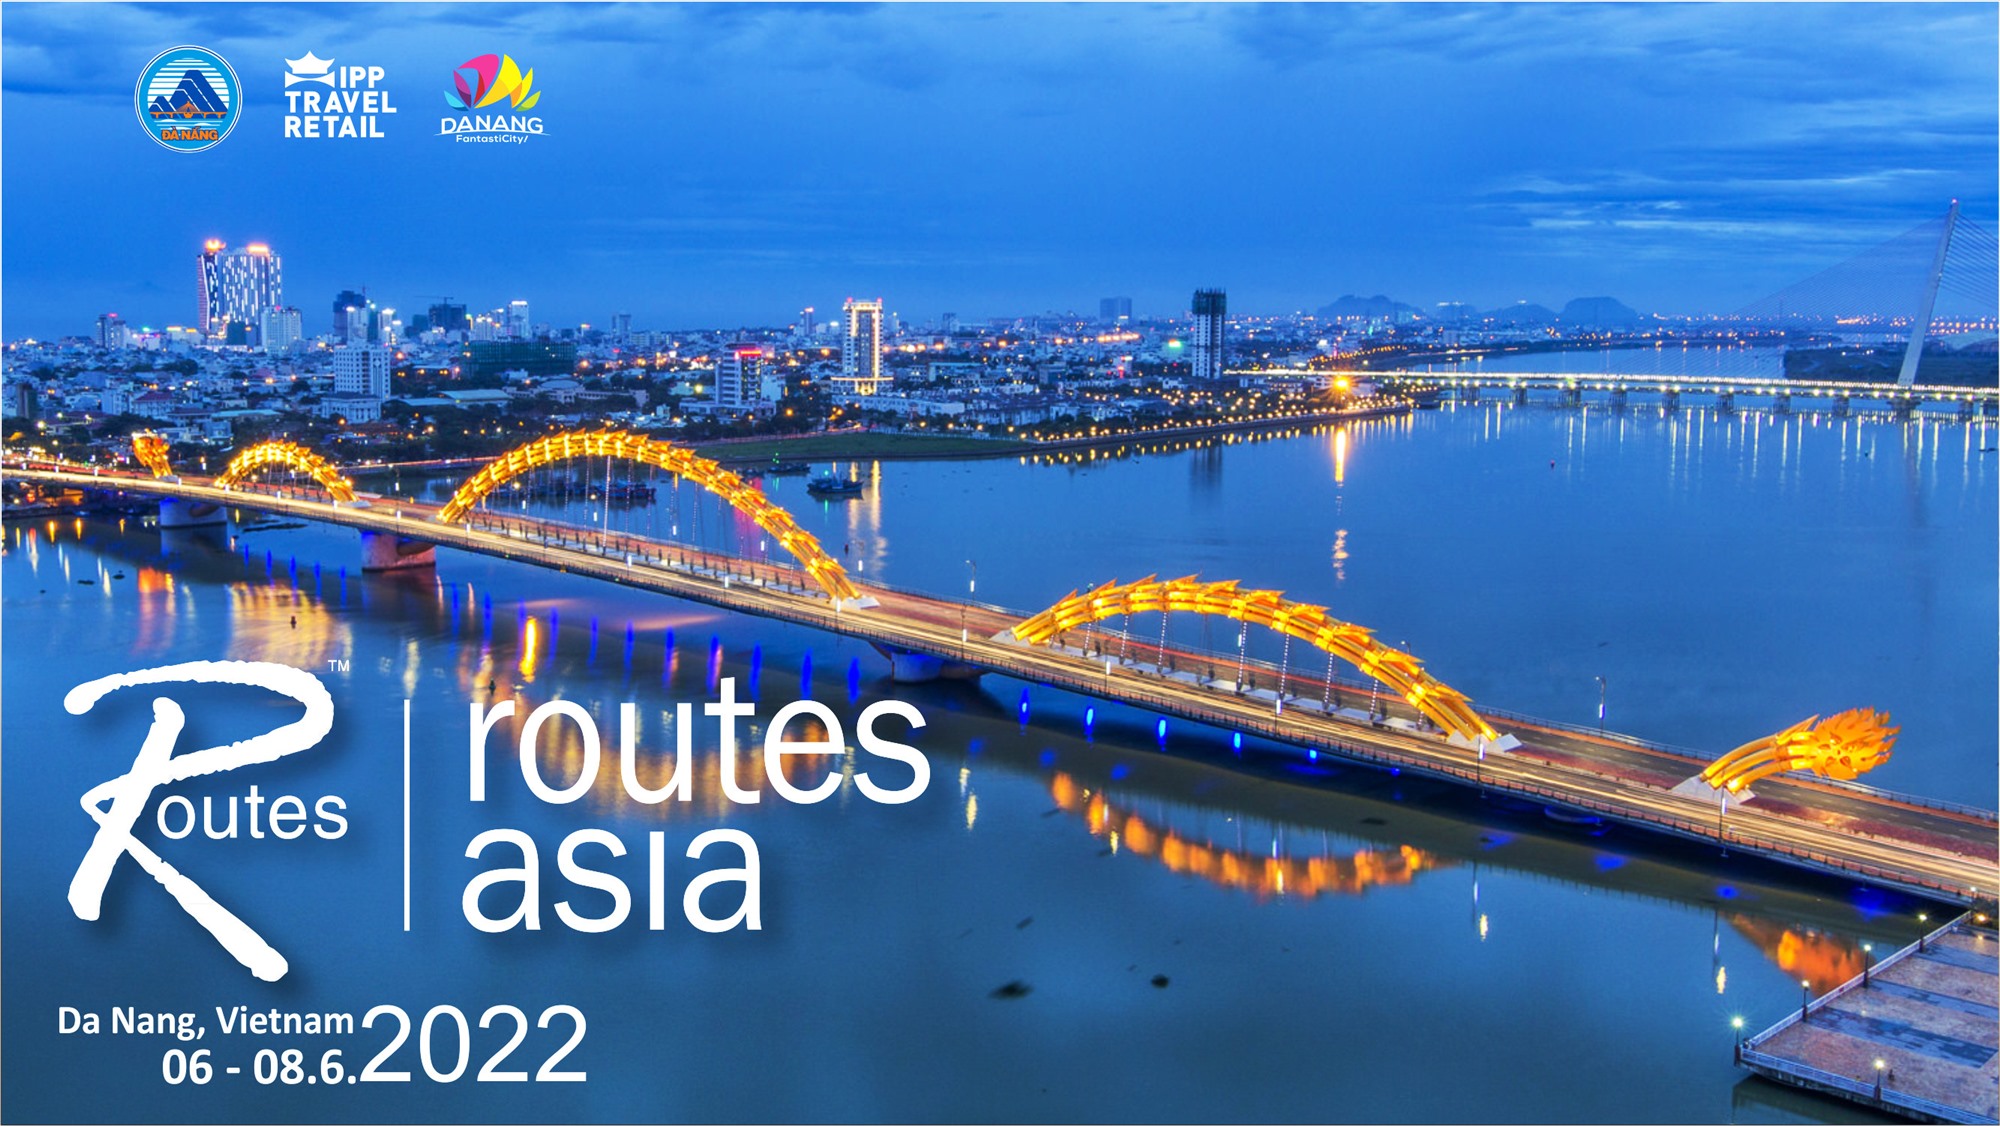 Đà Nẵng đăng cai Diễn đàn Phát triển đường bay châu Á 2022.